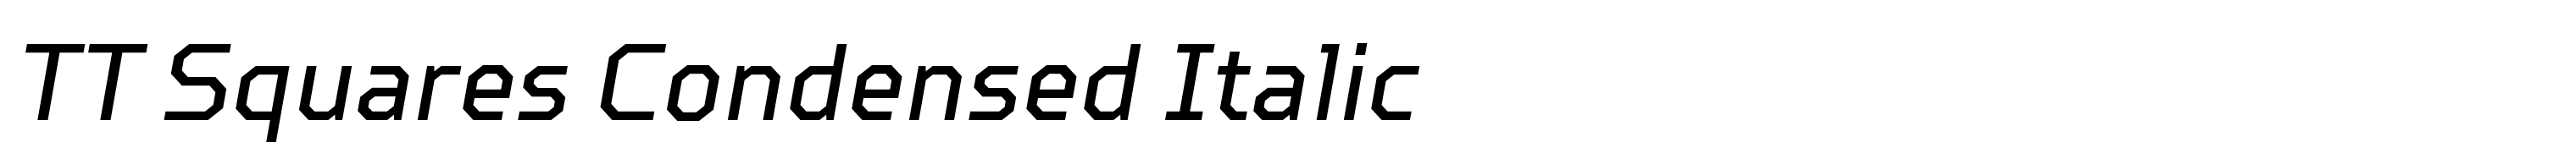 TT Squares Condensed Italic